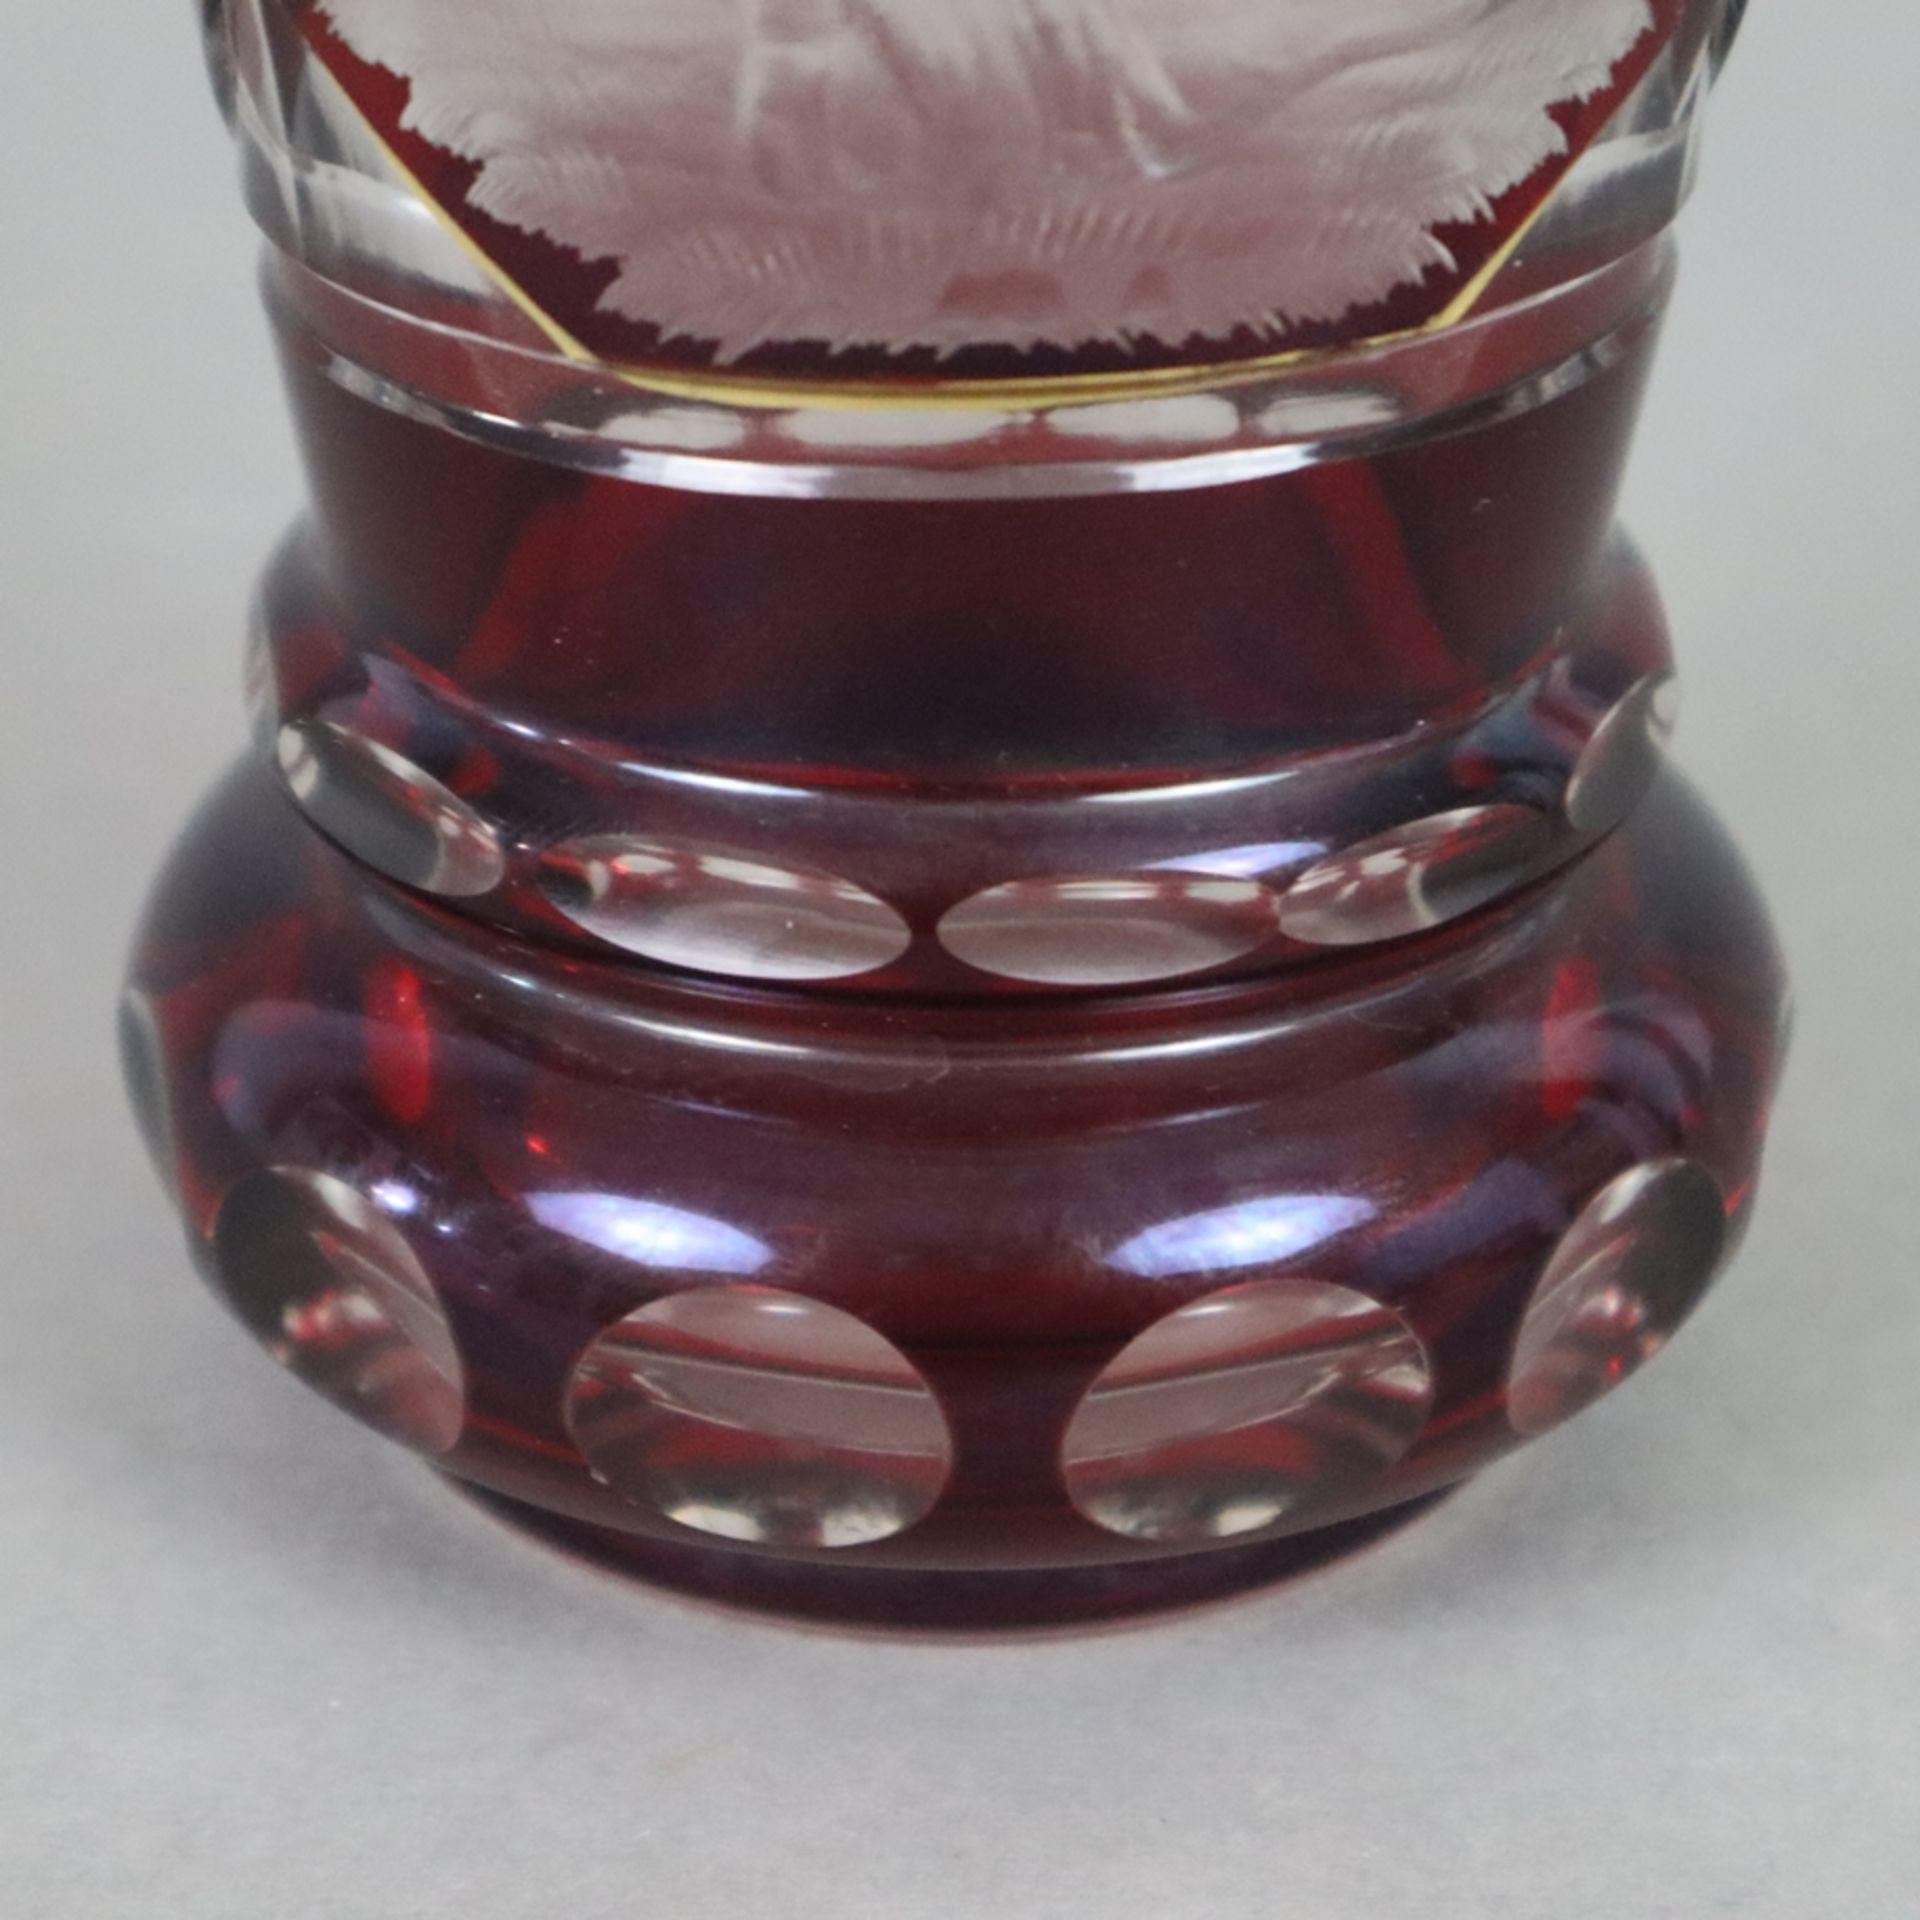 Ranftbecher - Böhmen 19. Jh., farbloses Glas, rot gebeizt, vergoldet, geschliffen, schauseitig Bild - Bild 5 aus 7